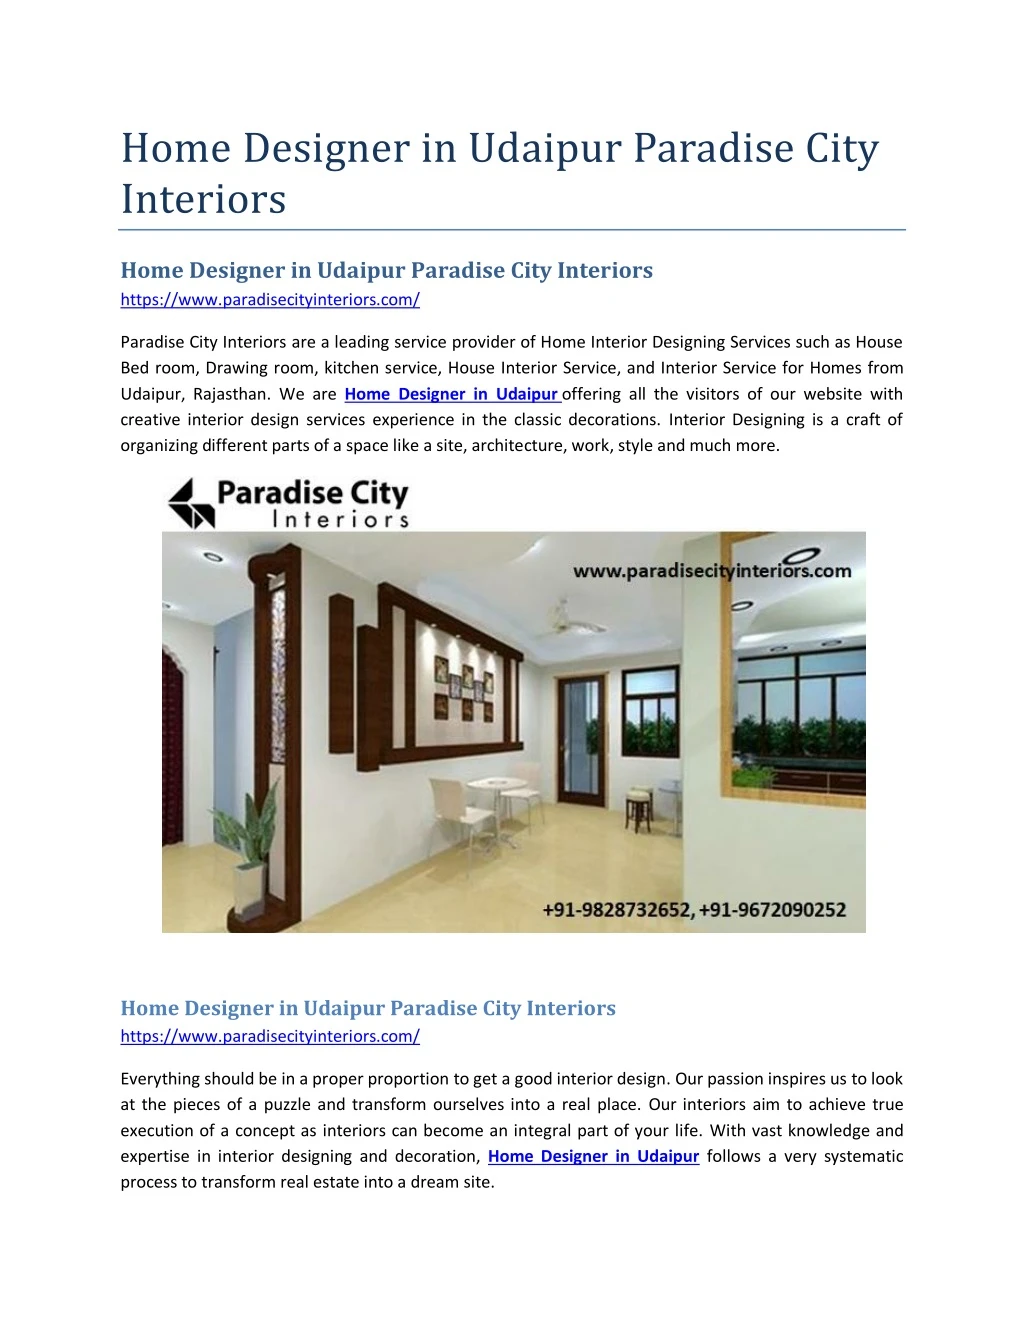 home designer in udaipur paradise city interiors